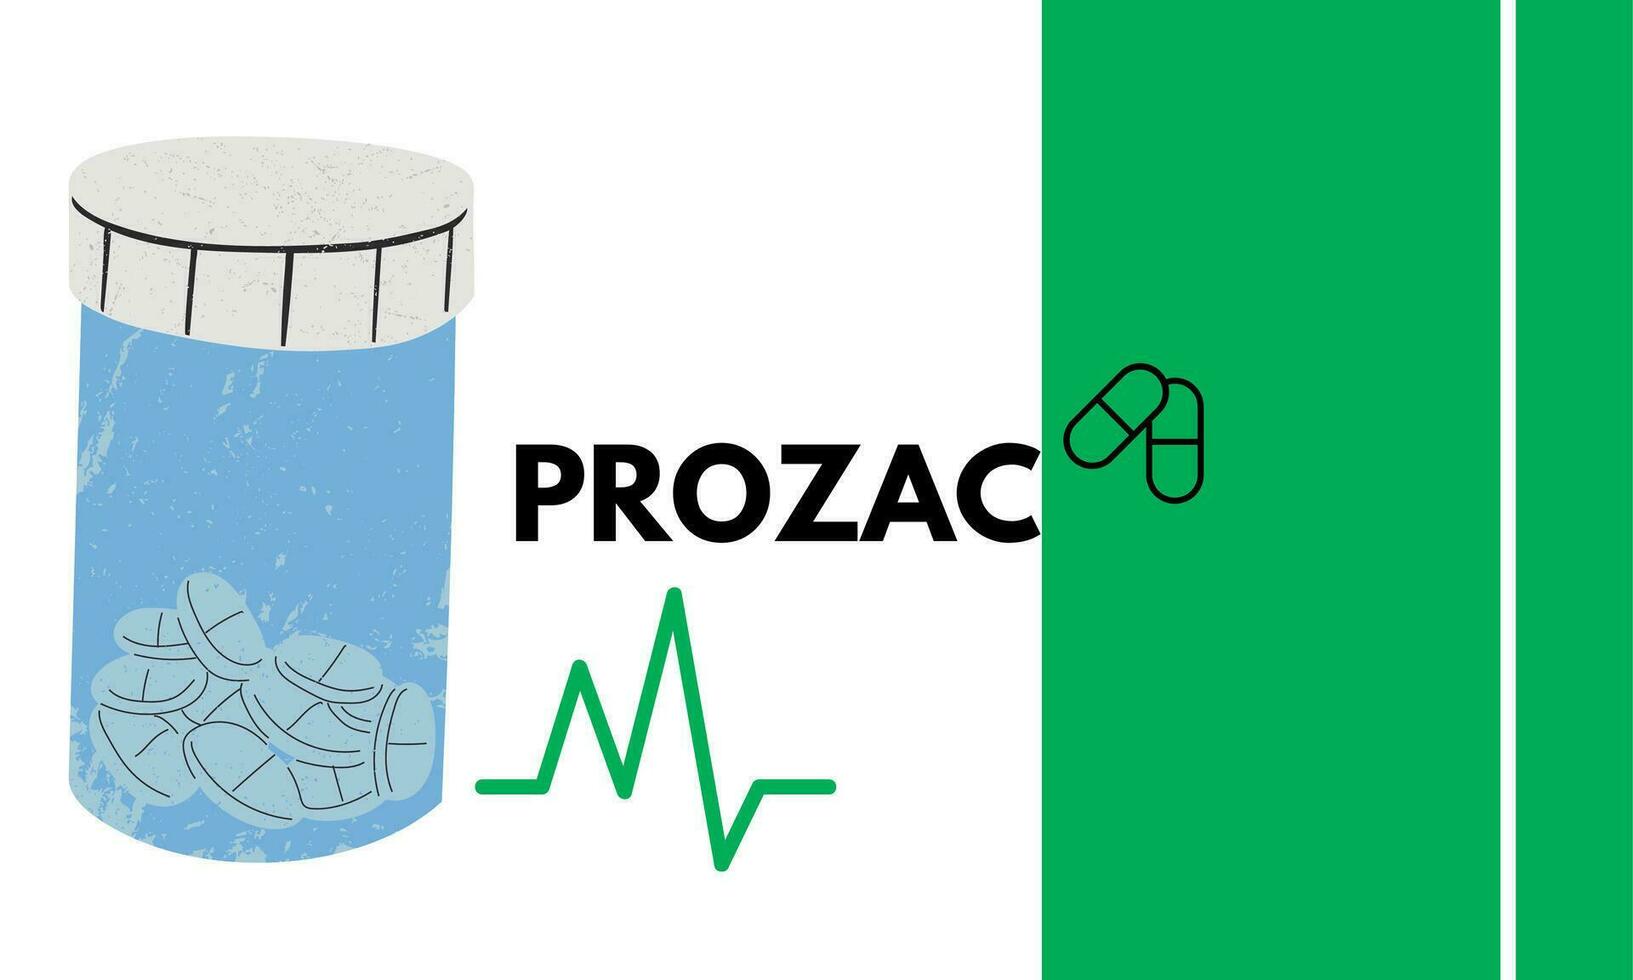 prozac medizinisch Tabletten im rx Rezept Droge Flasche zum mental Gesundheit Vektor Illustration